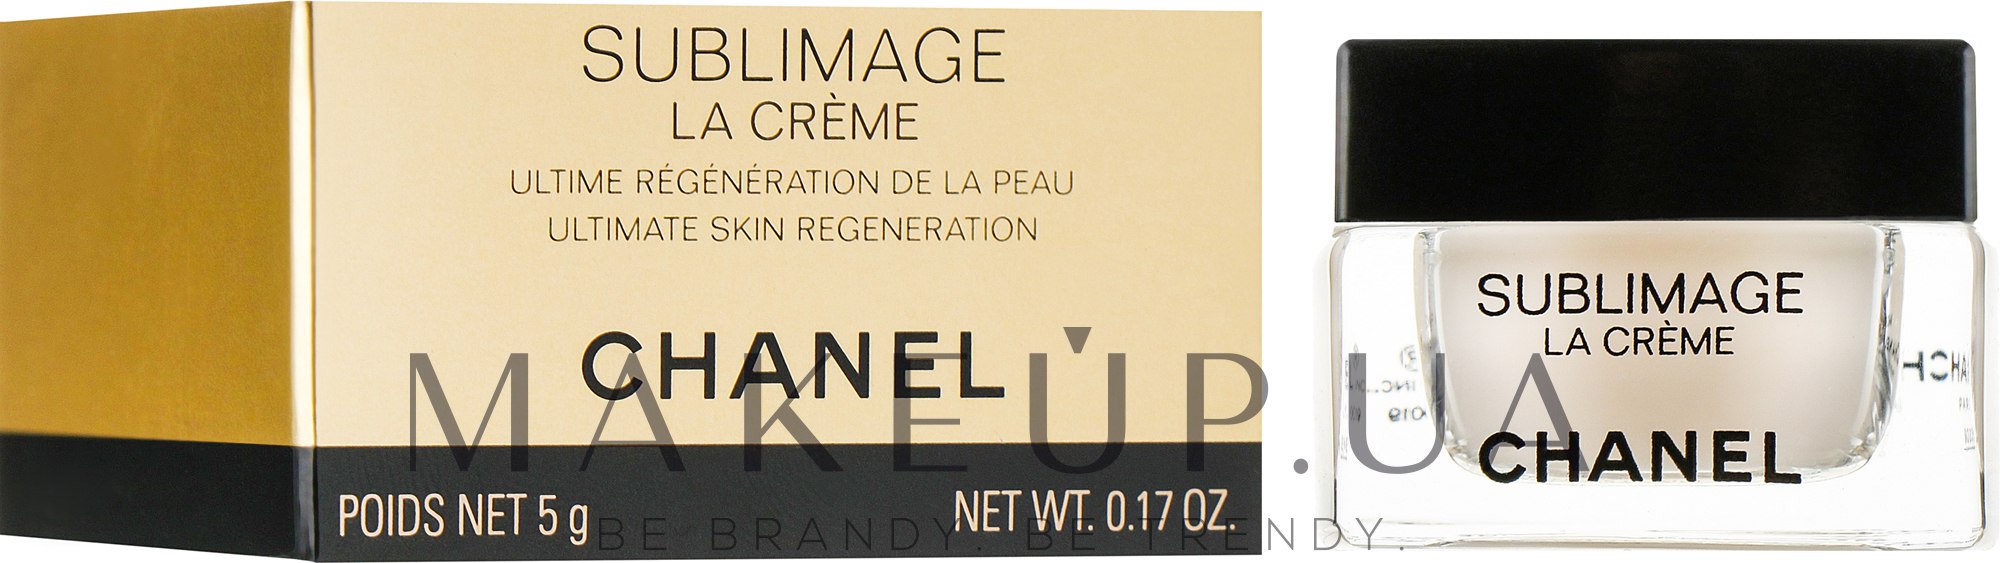 Chanel Sublimage La Creme (мини) - Регенерирующий крем для лица